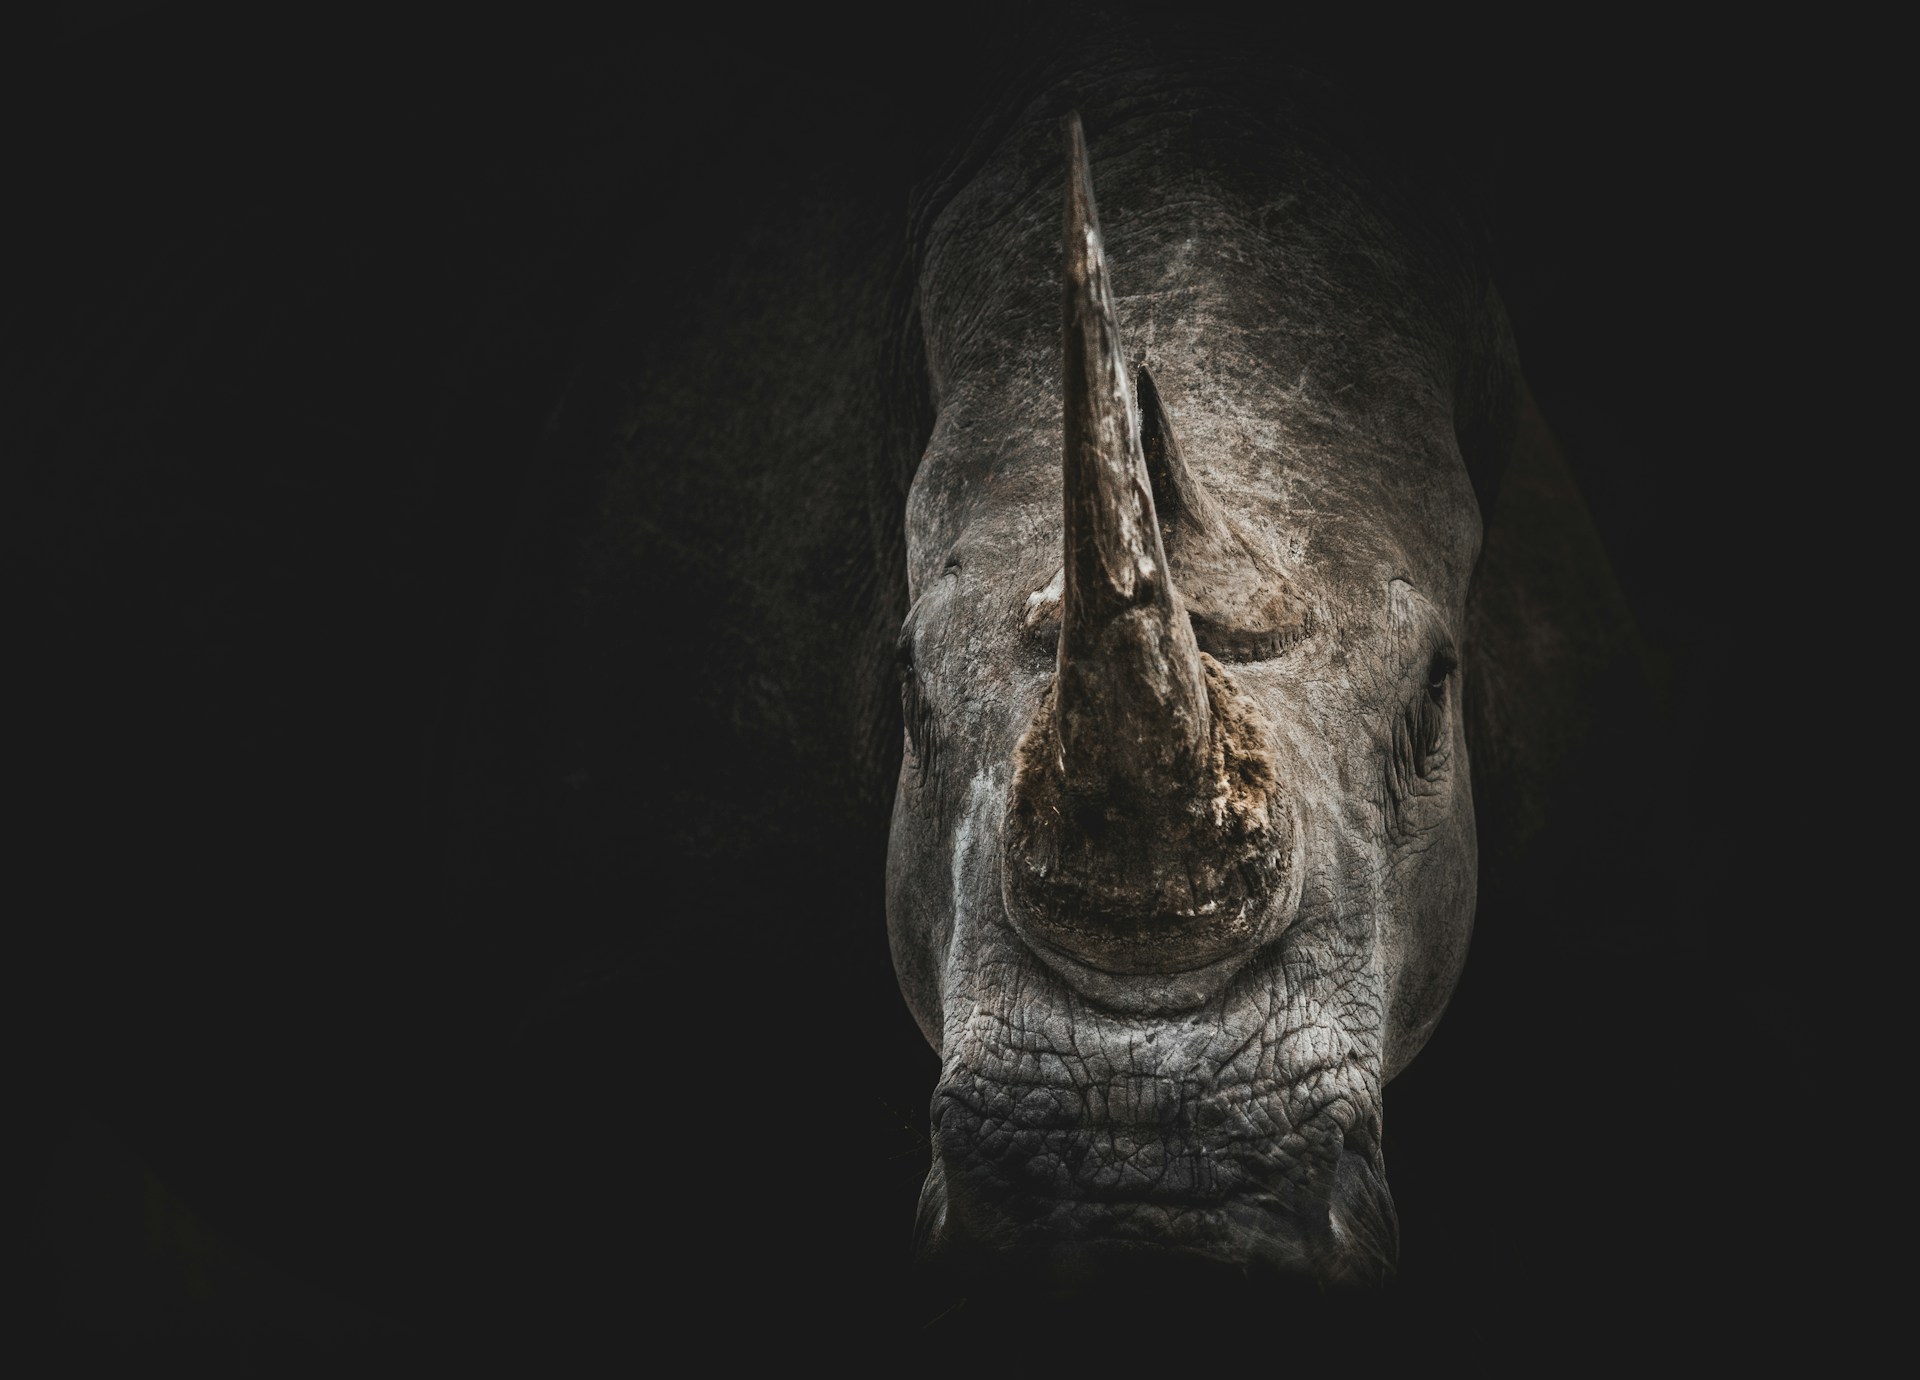 Cientistas sul-africanos estão implantando chips radioativos em chifres de rinocerontes.